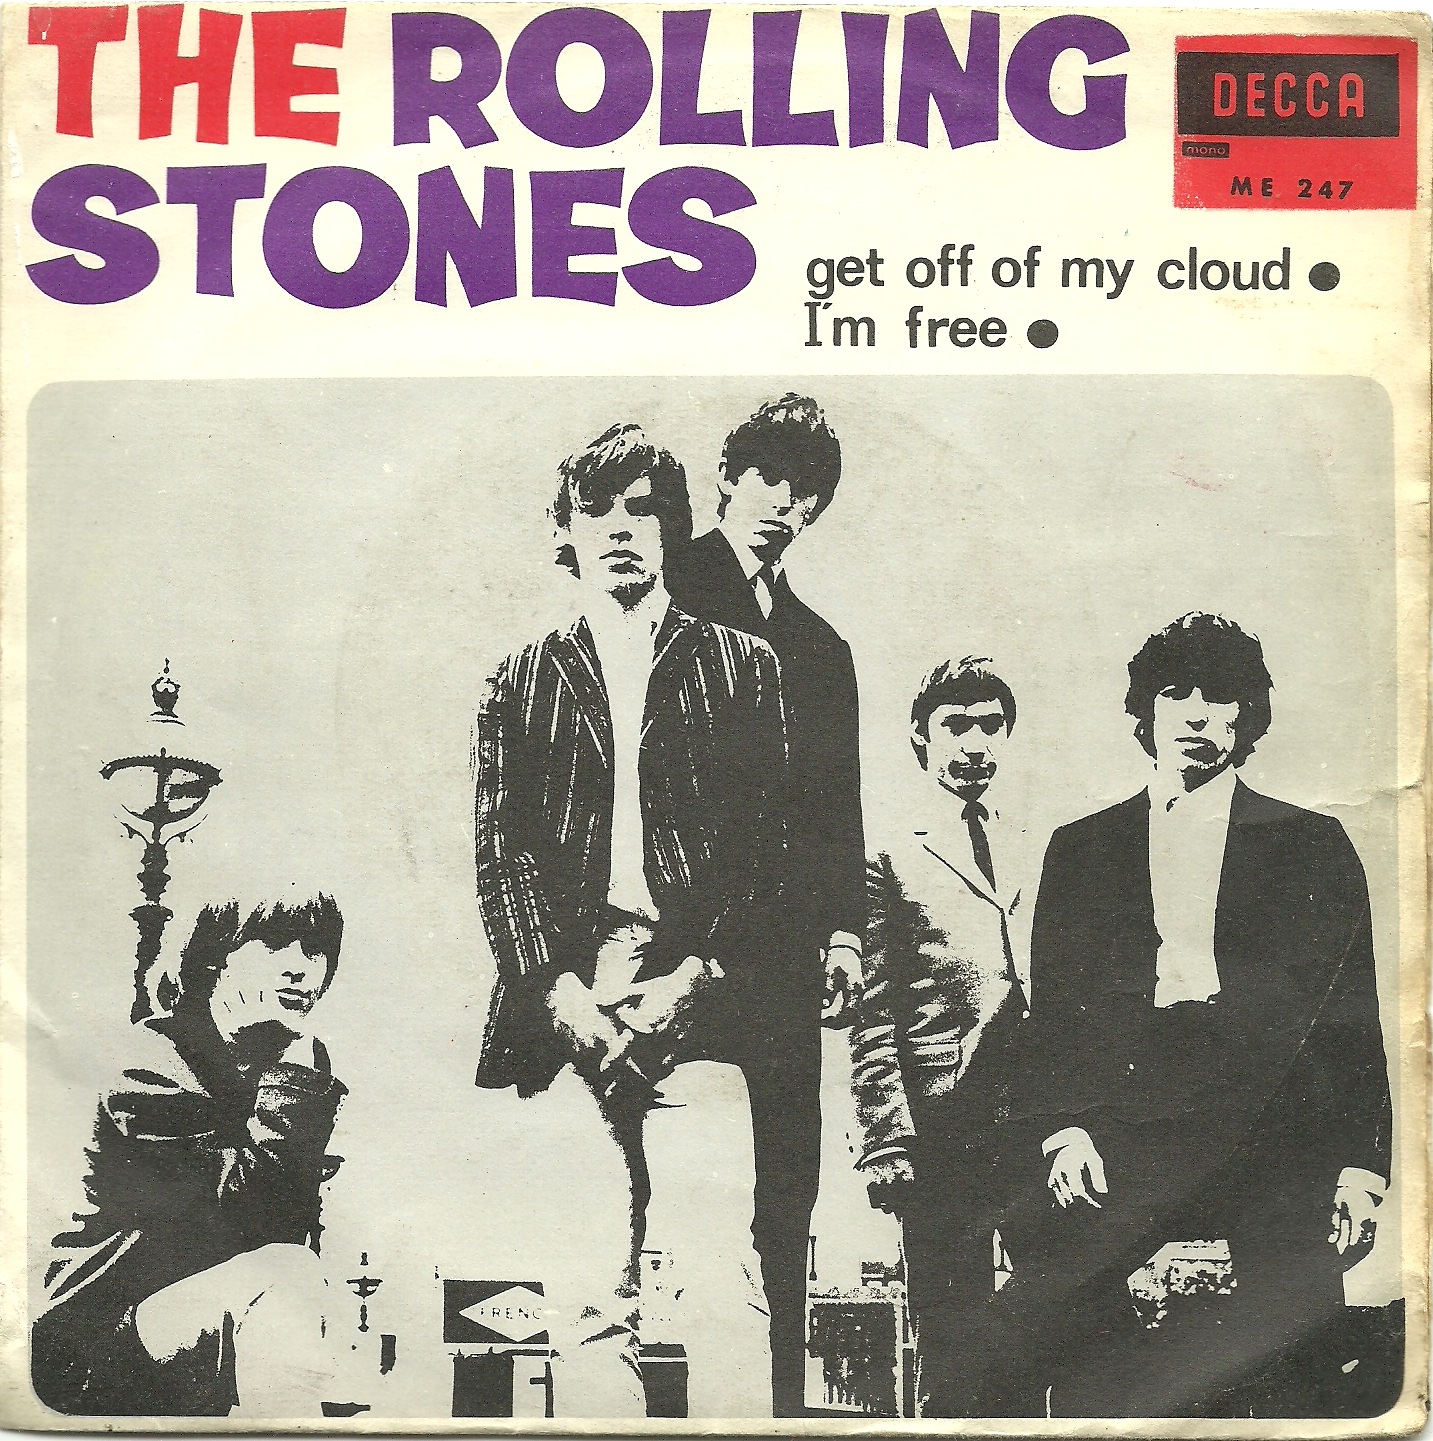 Rolling stones get. Get off of my cloud the Rolling Stones. The Rolling Stones обложка. Синглы Роллинг стоунз. Get off.